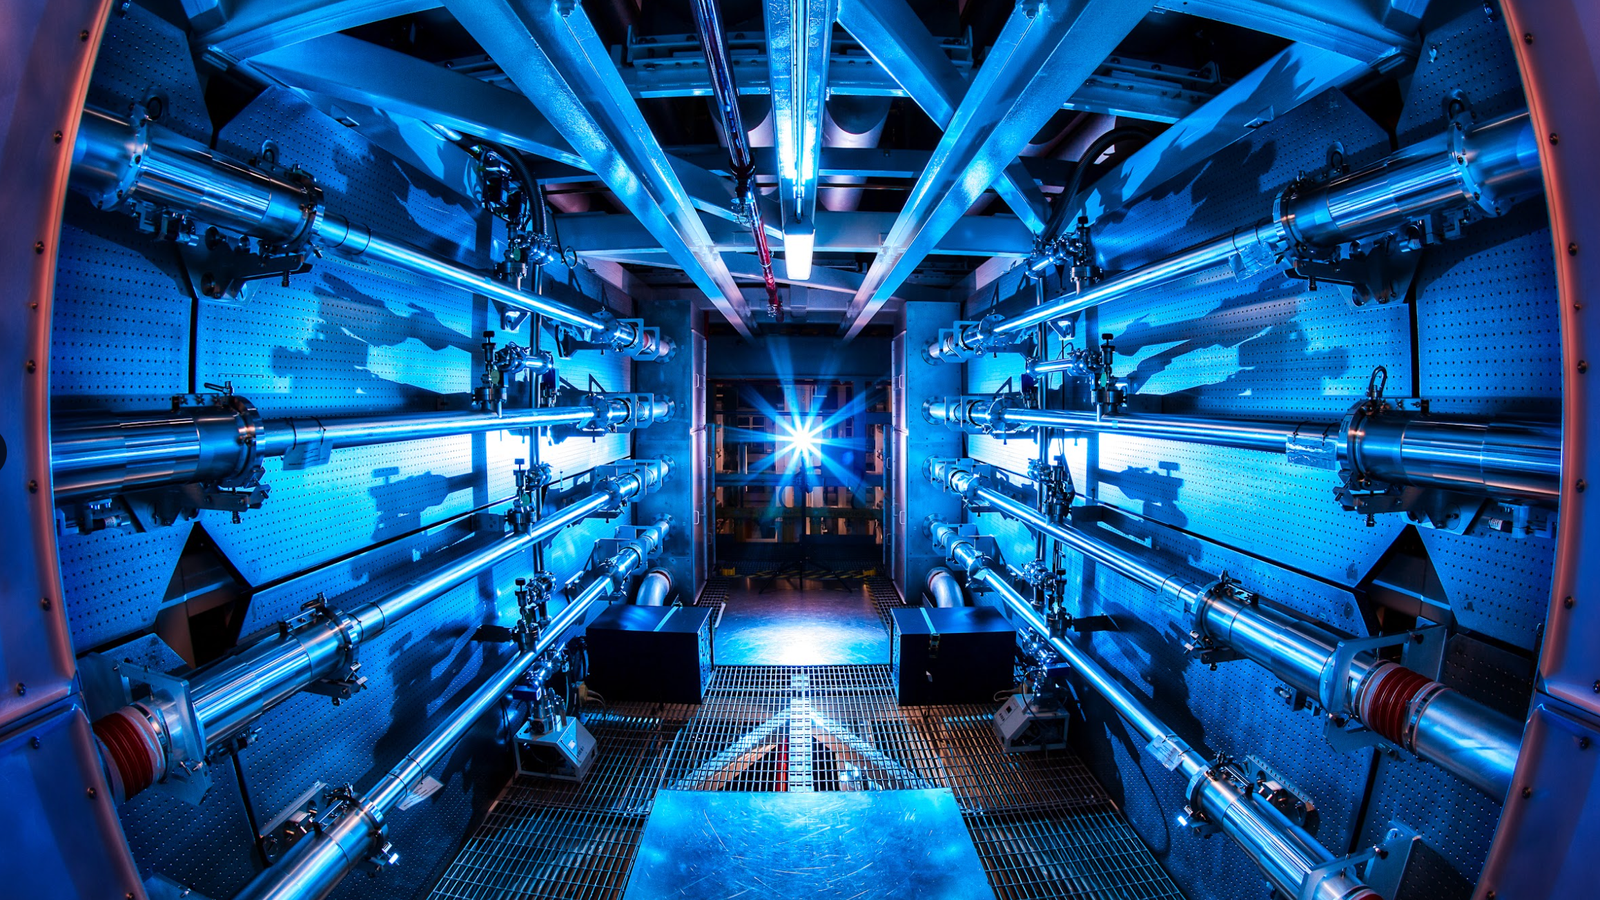 Une expérience de fusion nucléaire miraculeuse qui pourrait « révolutionner le monde » avec une énergie propre |  L’actualité scientifique et technologique